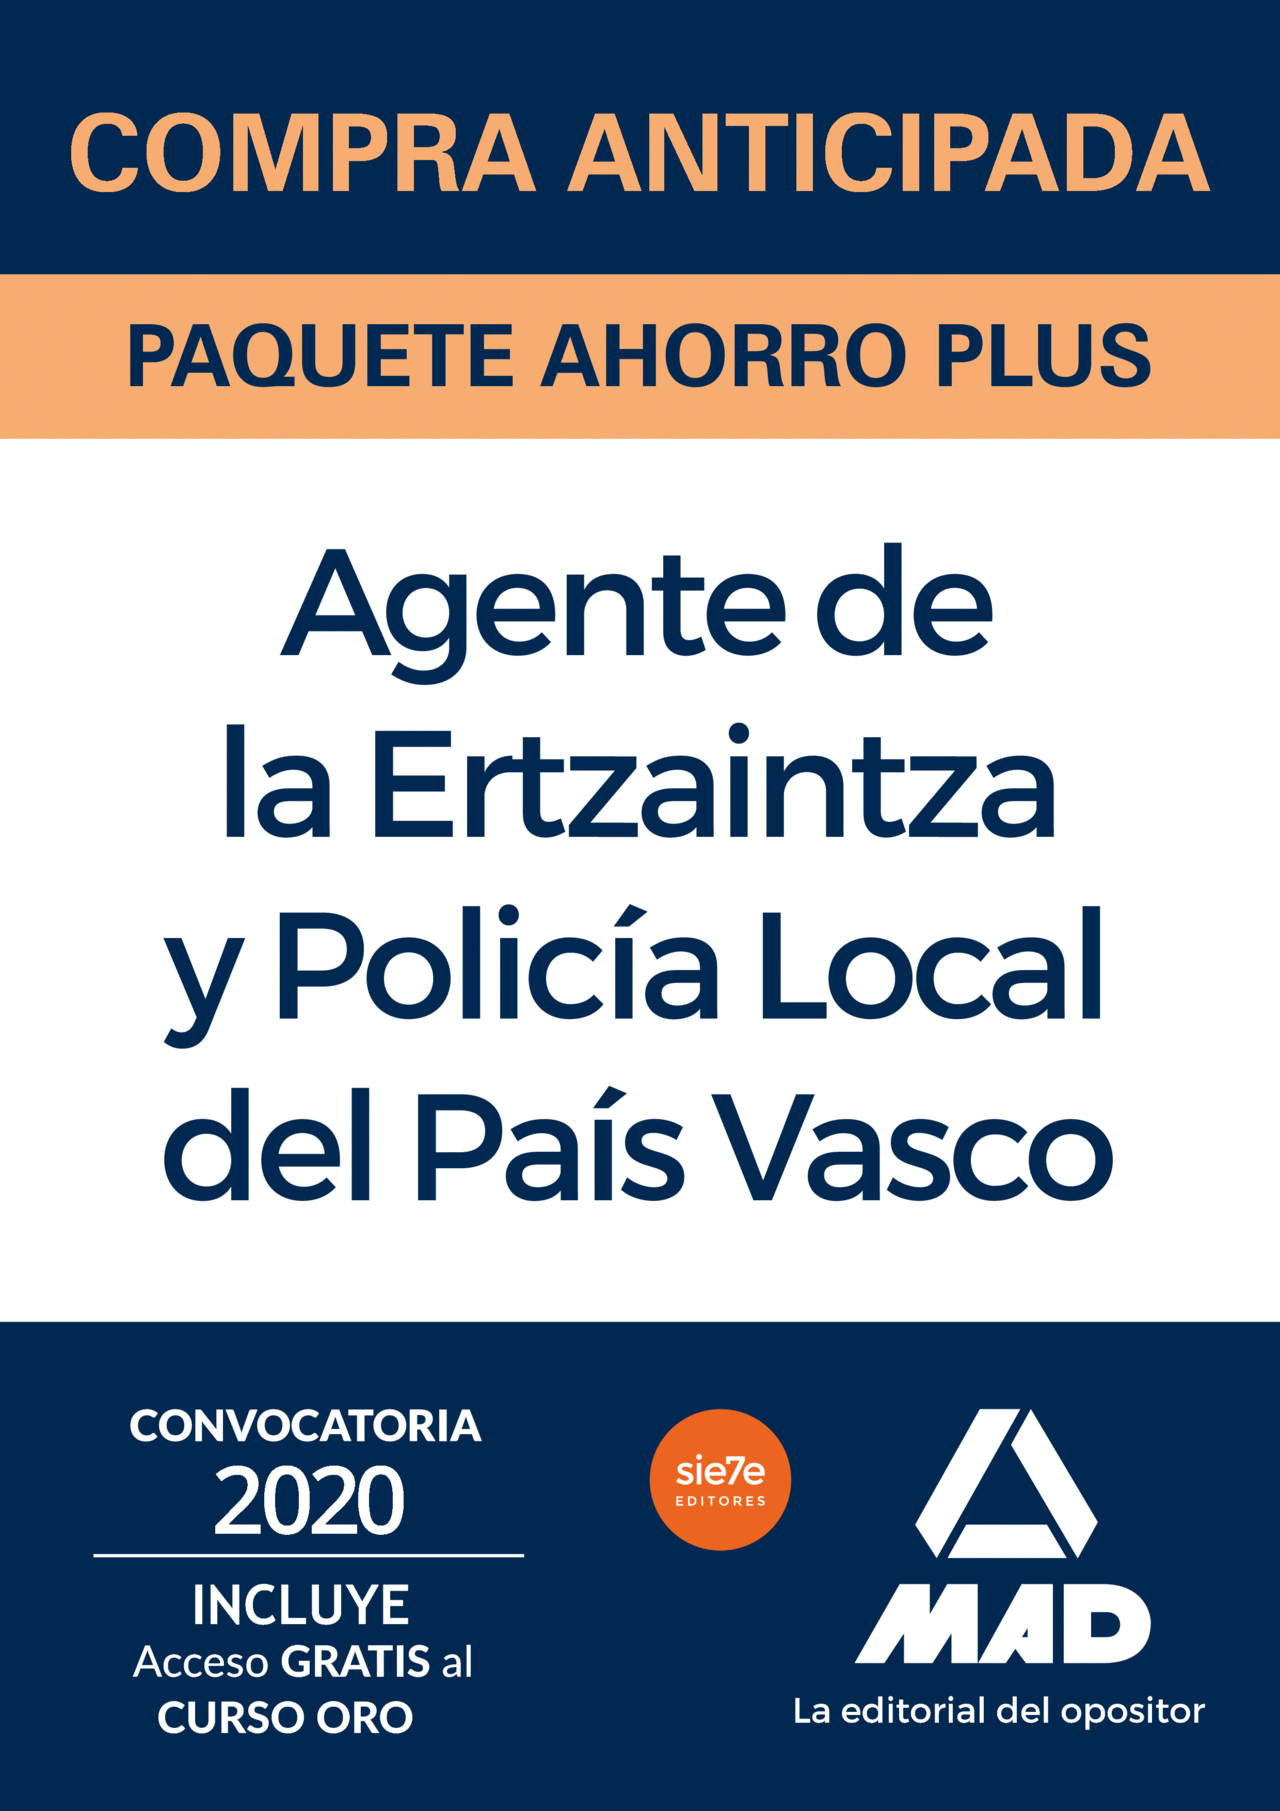 COMPRA ANTICIPADA PAQUETE AHORRO PLUS ERTZAINTZA Y POLICÍA LOCAL DEL PAÍS VASCO.